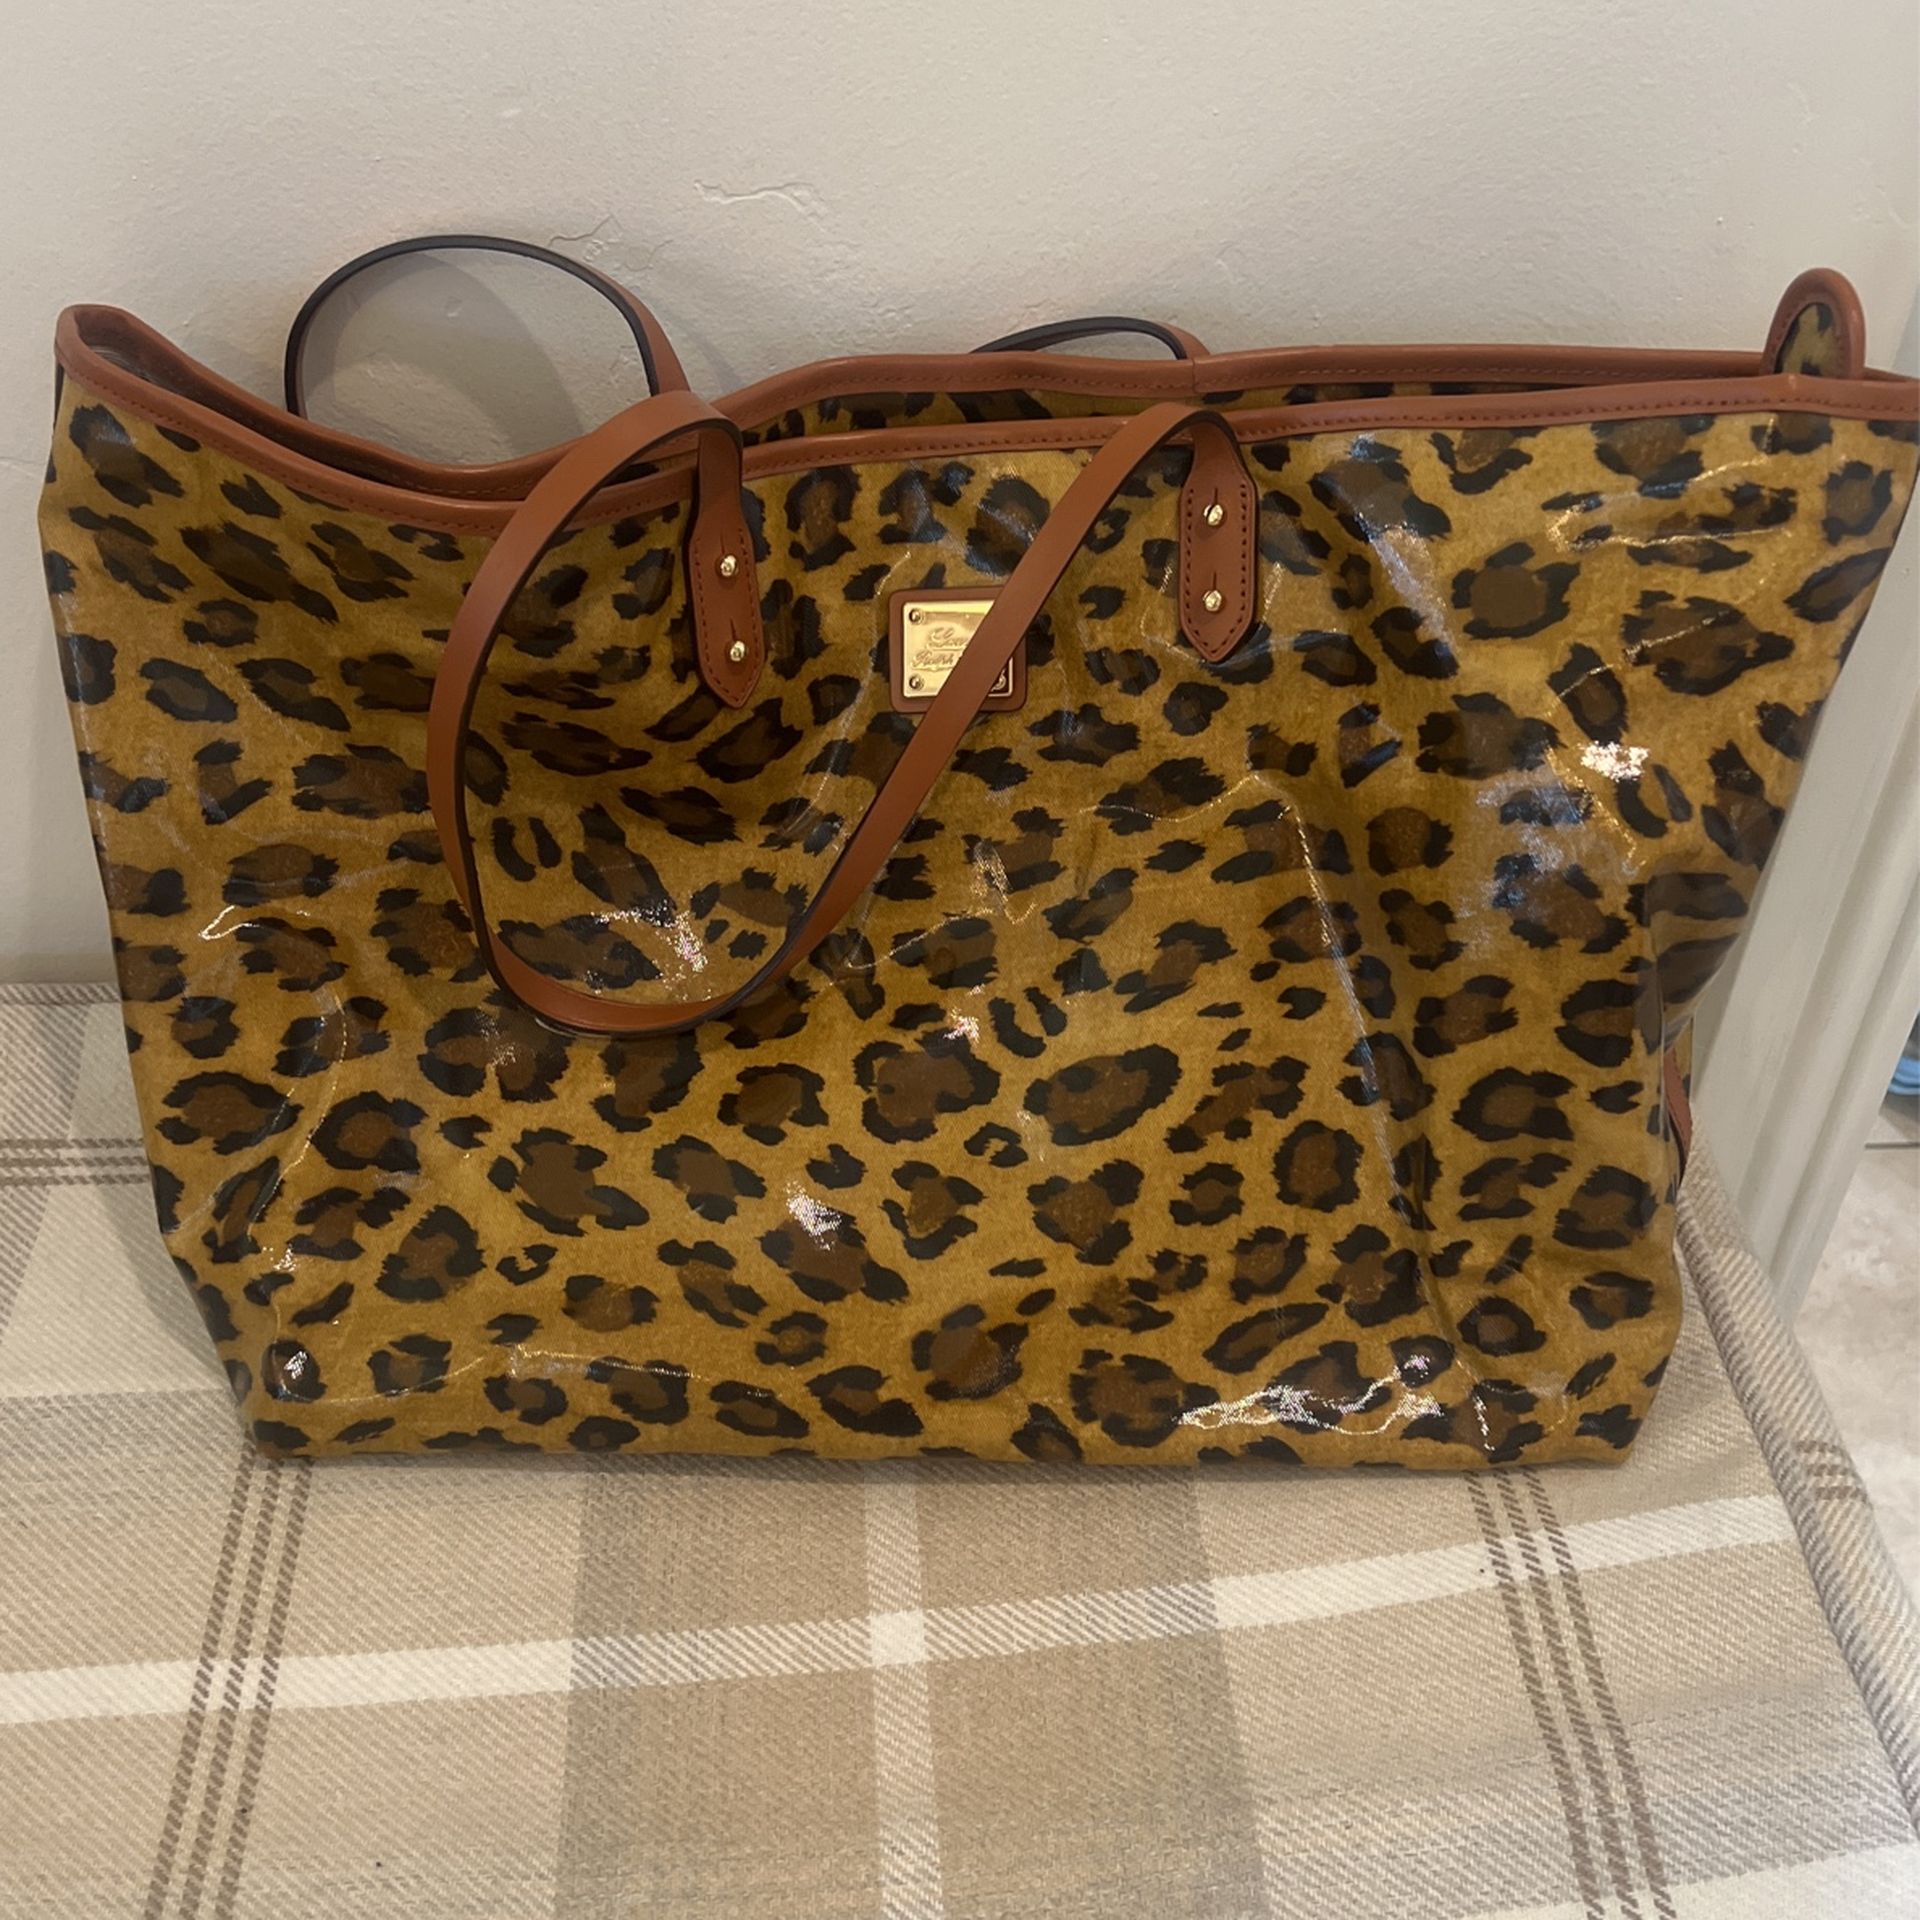 ralph lauren handbags used